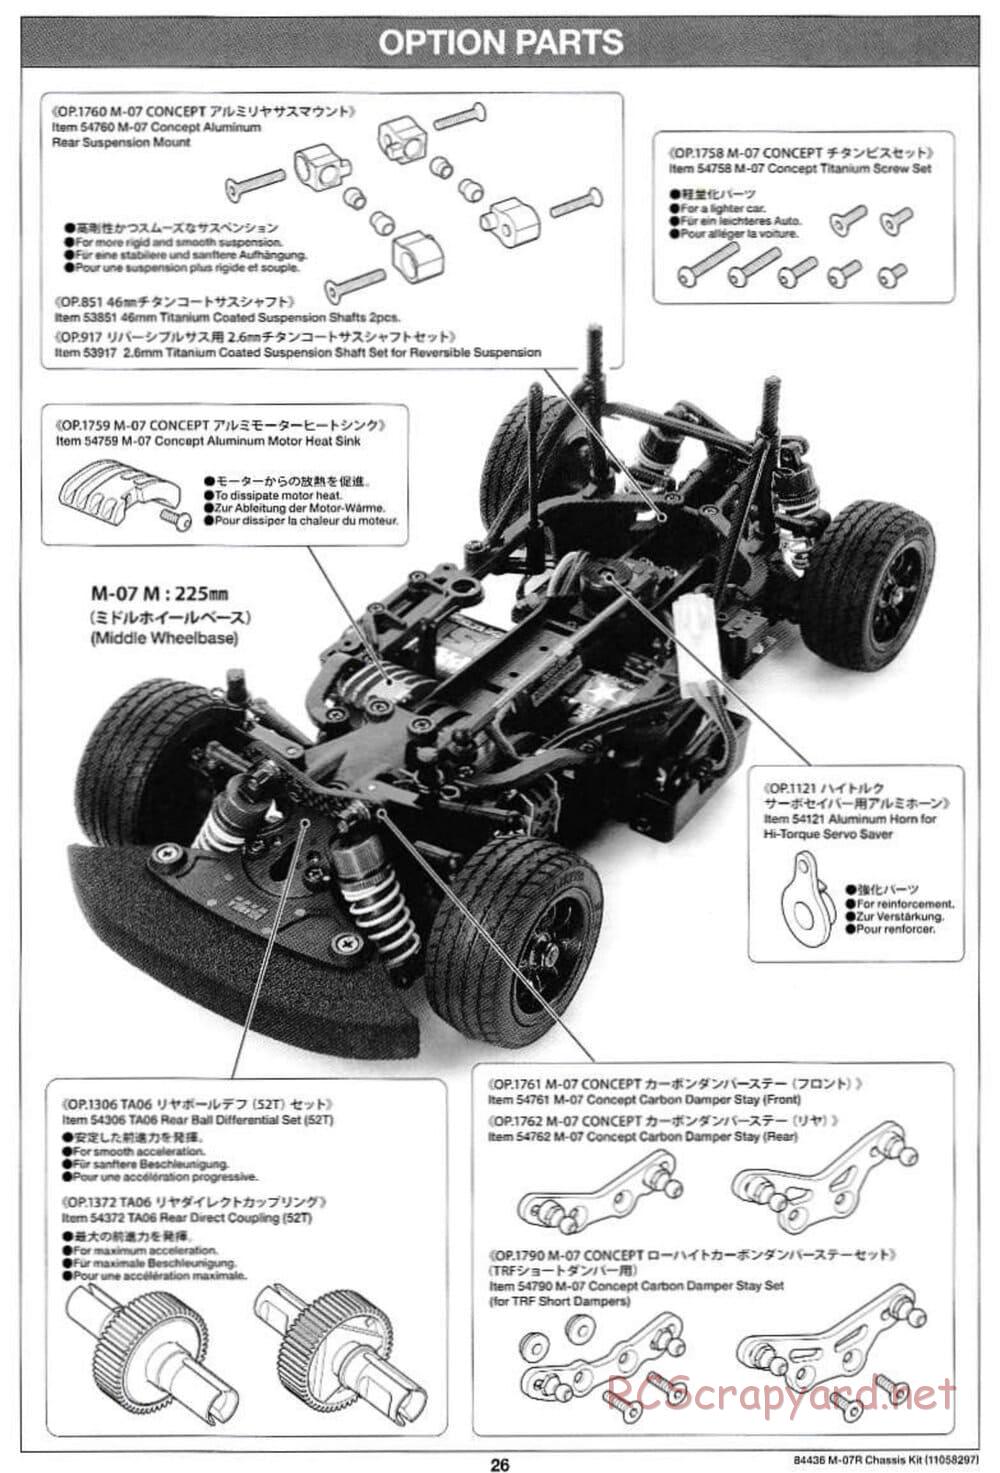 Tamiya - M-07R Chassis - Manual - Page 26